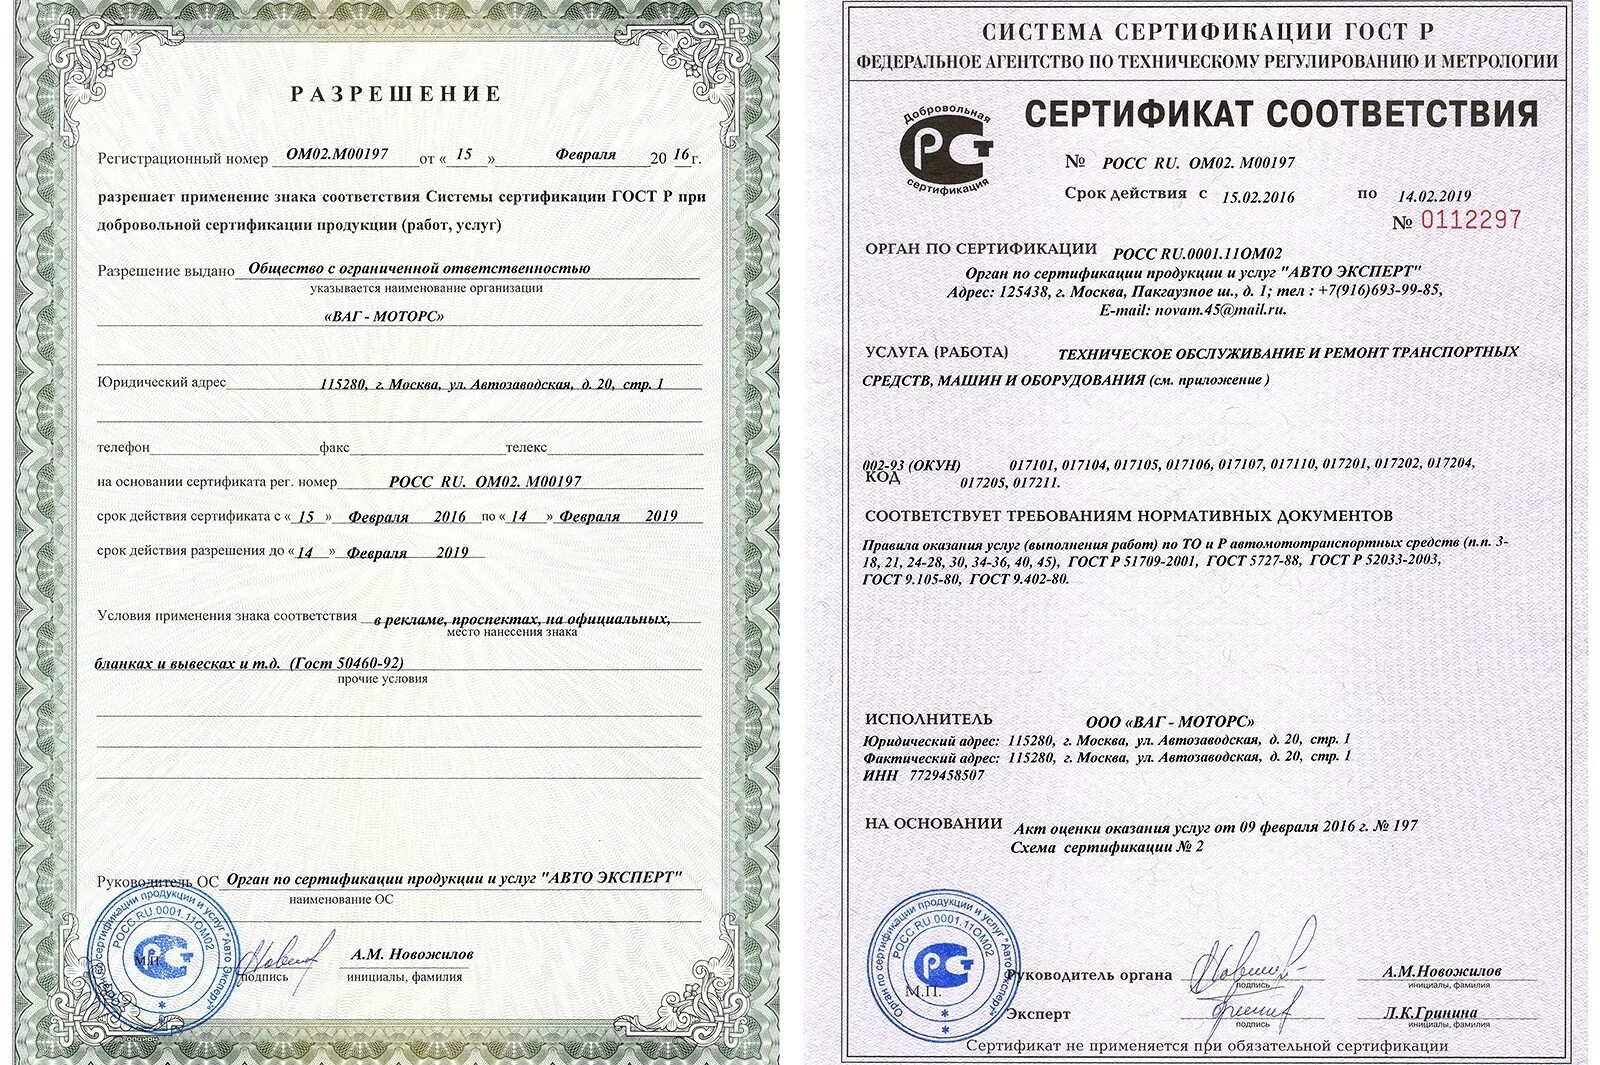 Независимая сертификация. Сертификат соответствия. Сертификат соотвестви. Сертификат соответствия на товар. Обязательный сертификат качества.